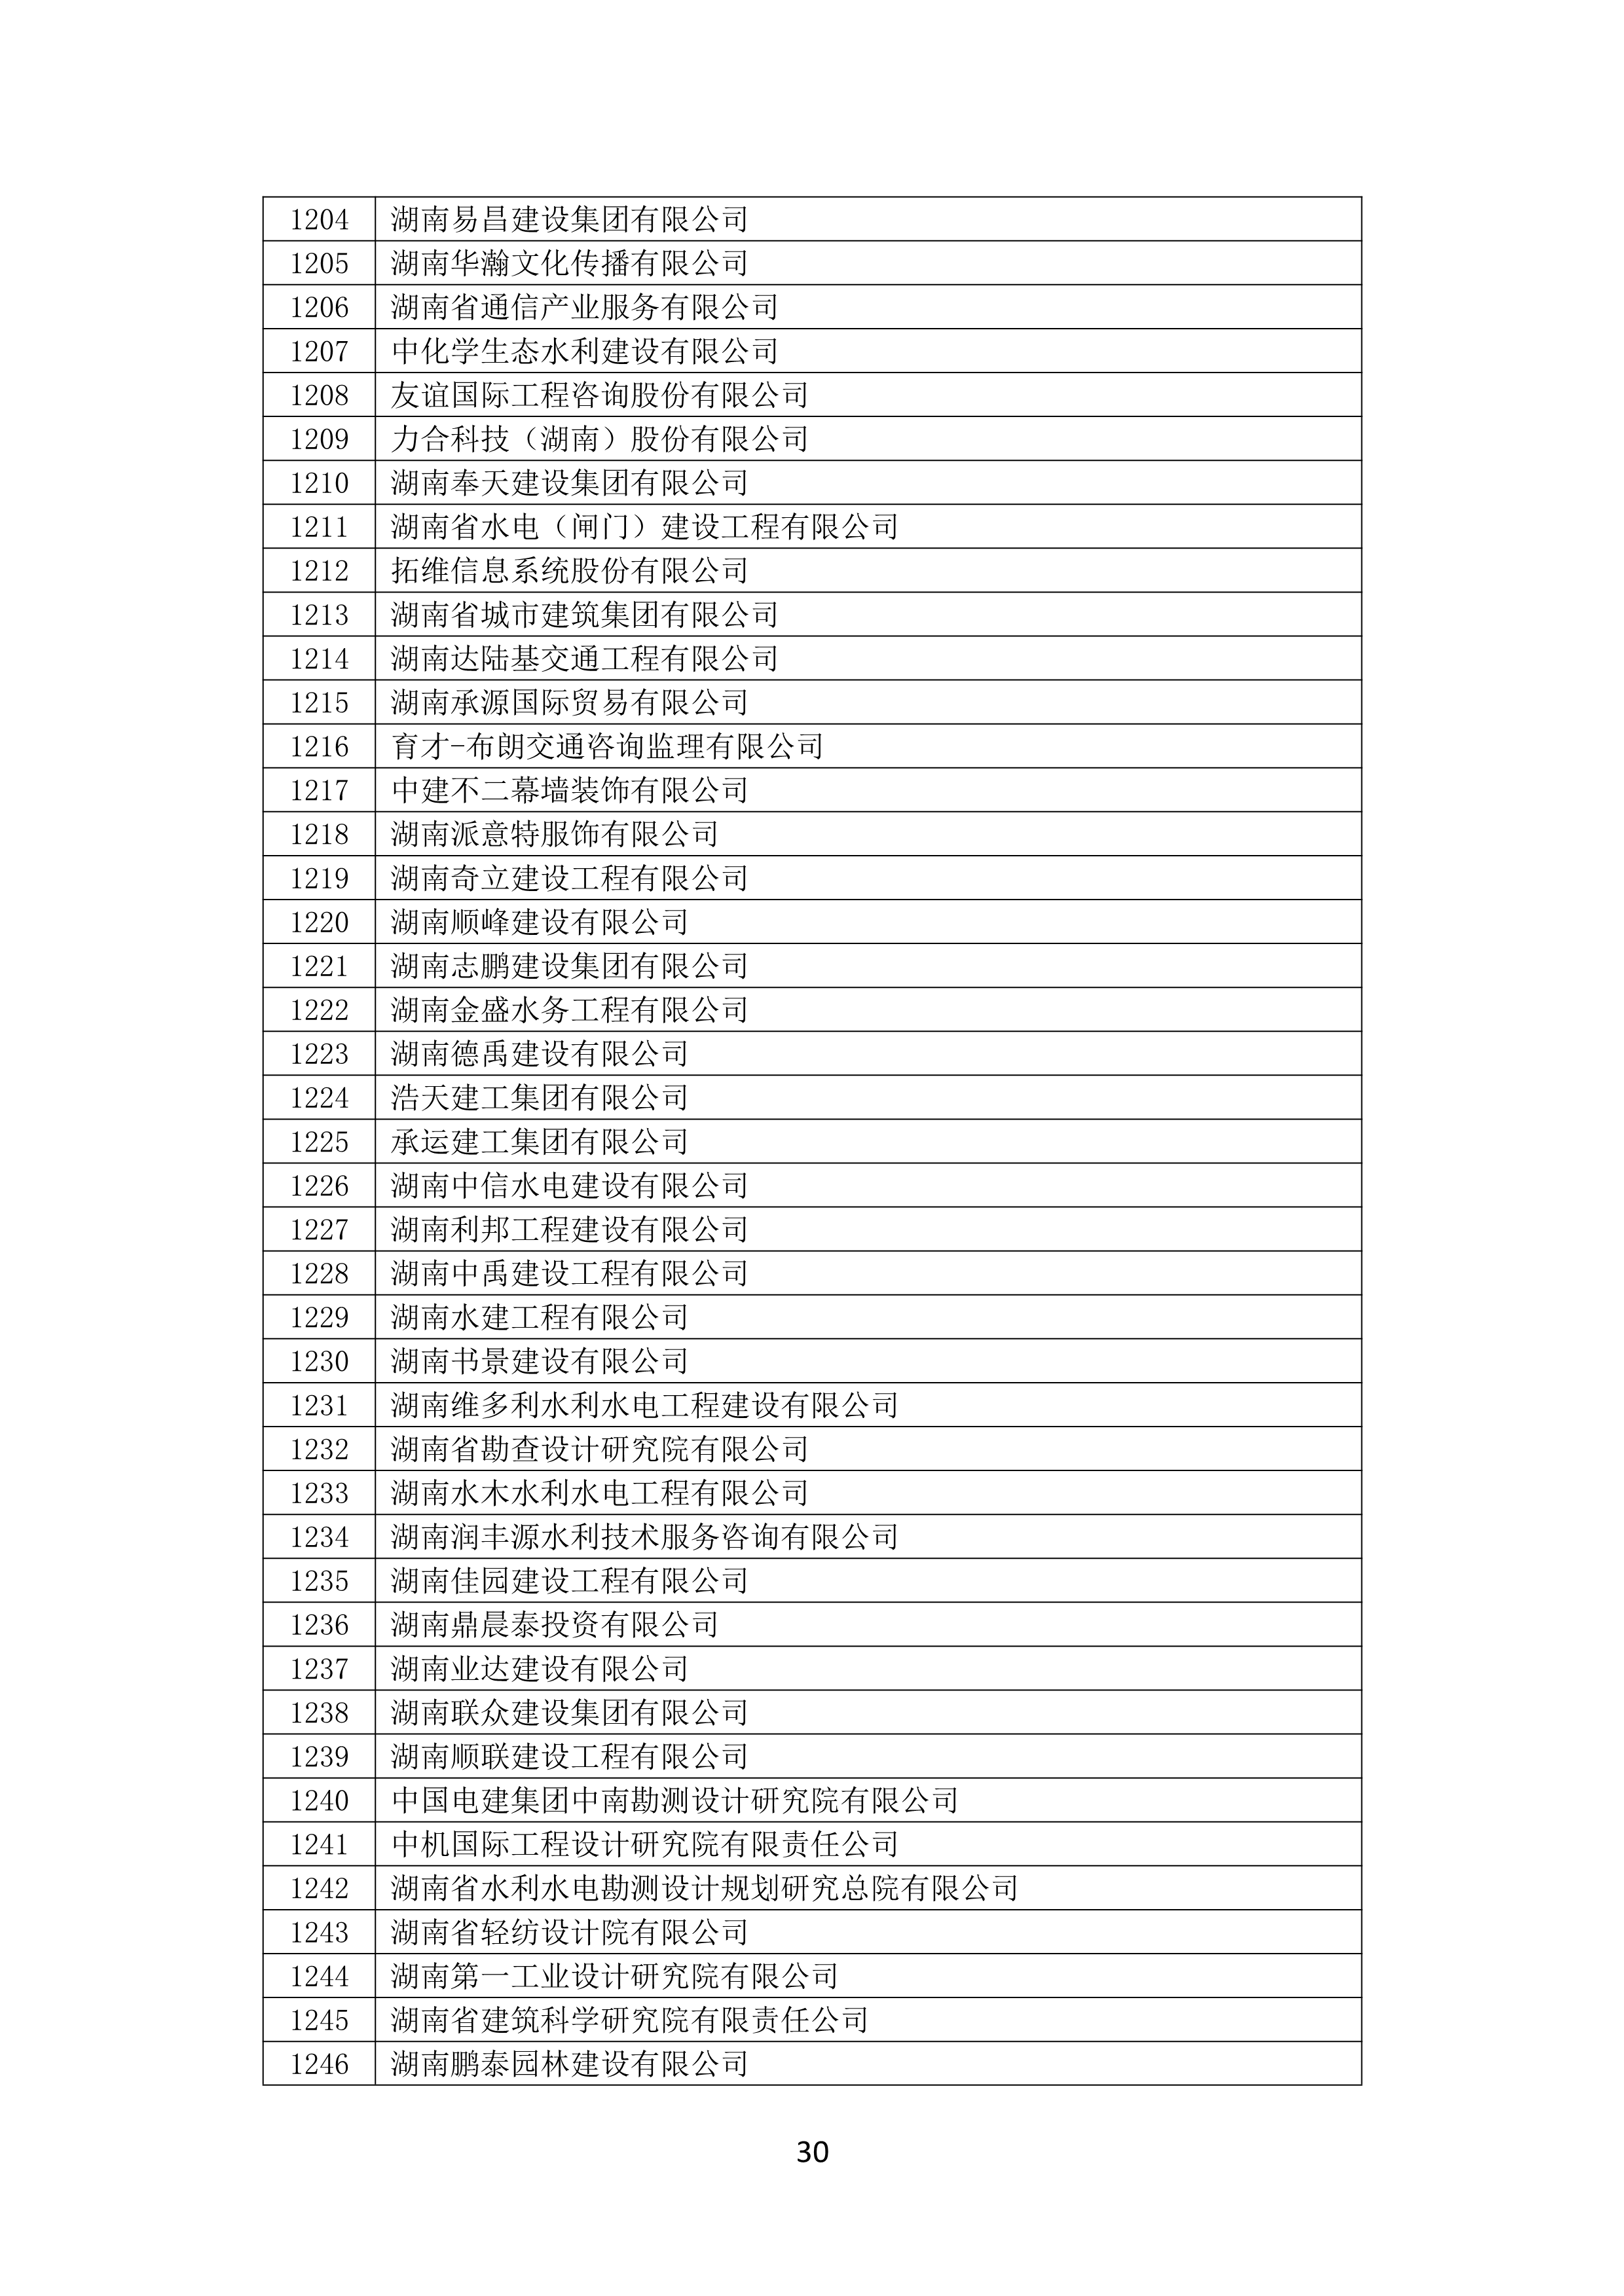 2021 年(nián)度湖南省守合同重信用企業名單_31.png